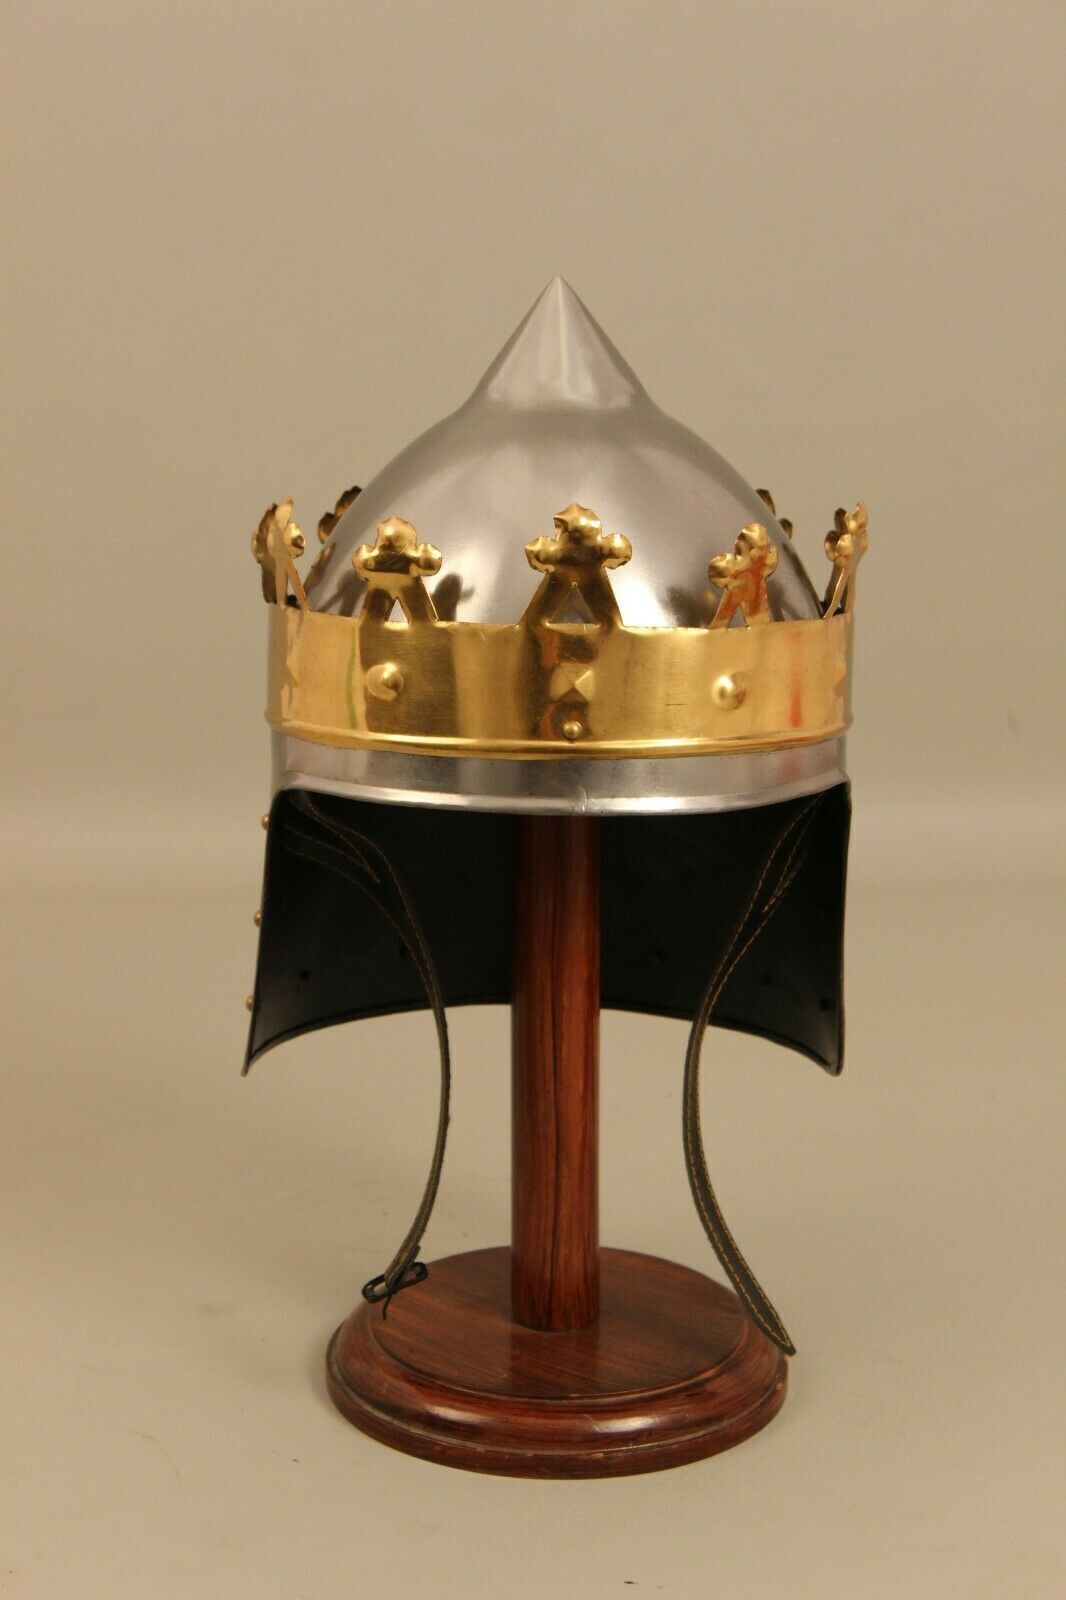 18 Gauge Stahl mittelalterlichen Ritter Könige Rechard Helm Messing Krone Helm Cosplay